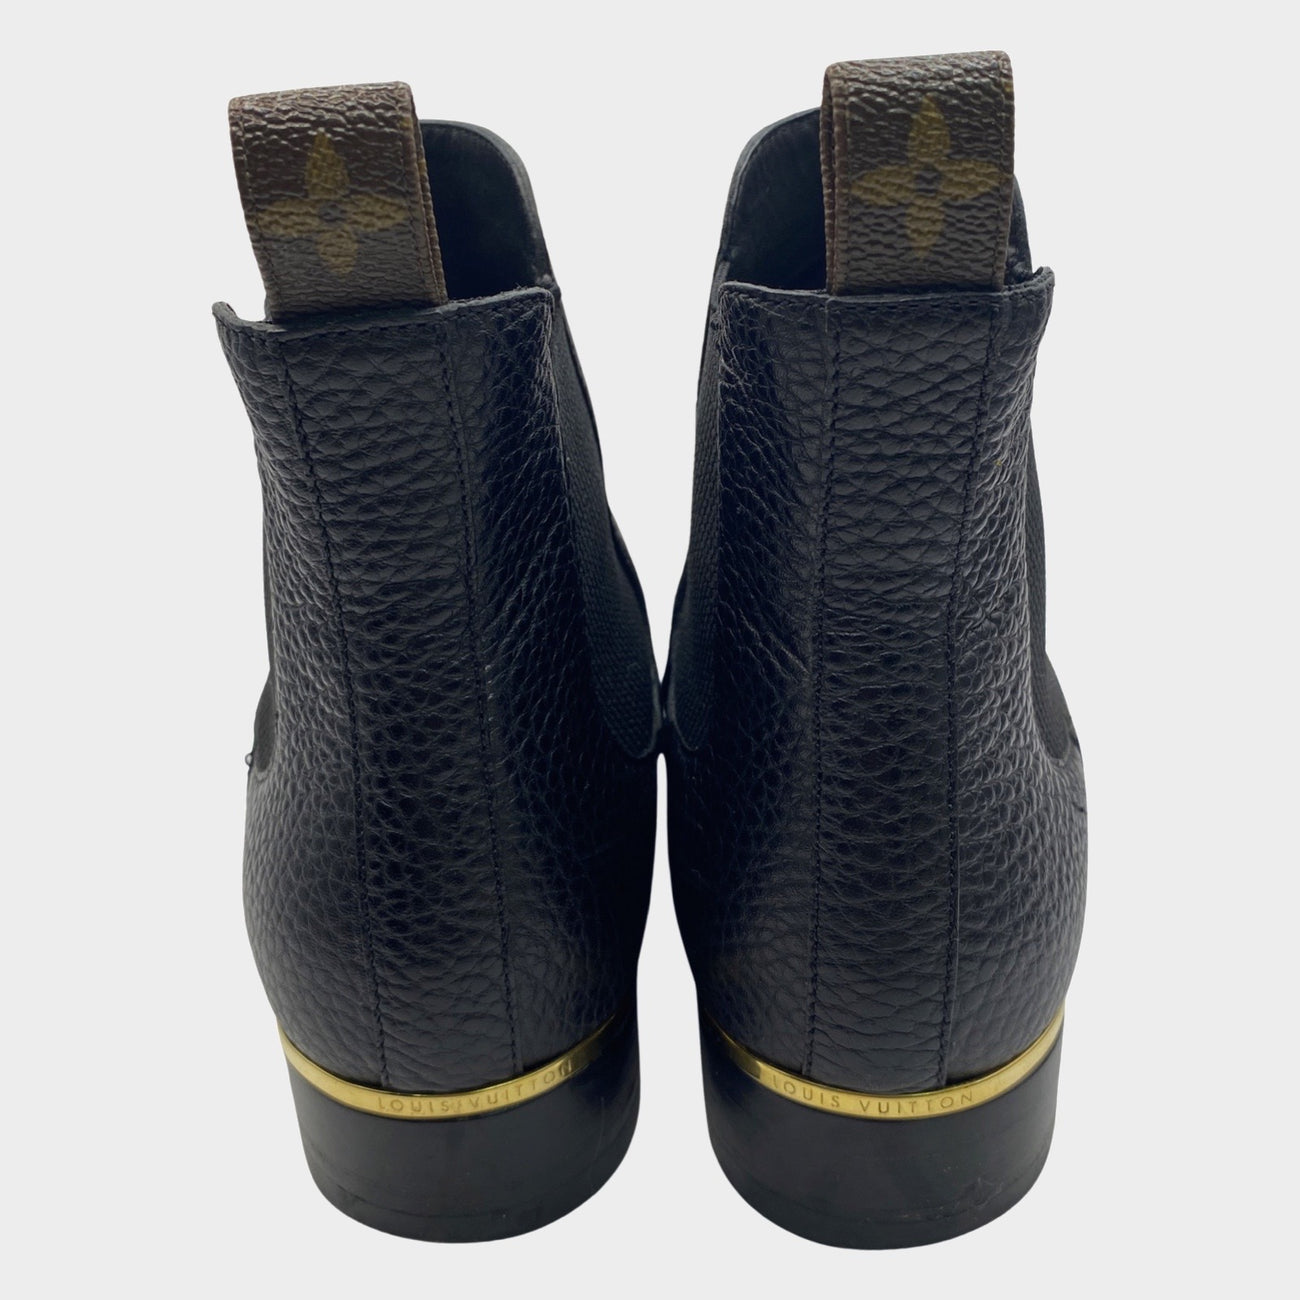 Louis Vuitton Leather Chelsea Boots - Black Boots, Shoes - LOU809511